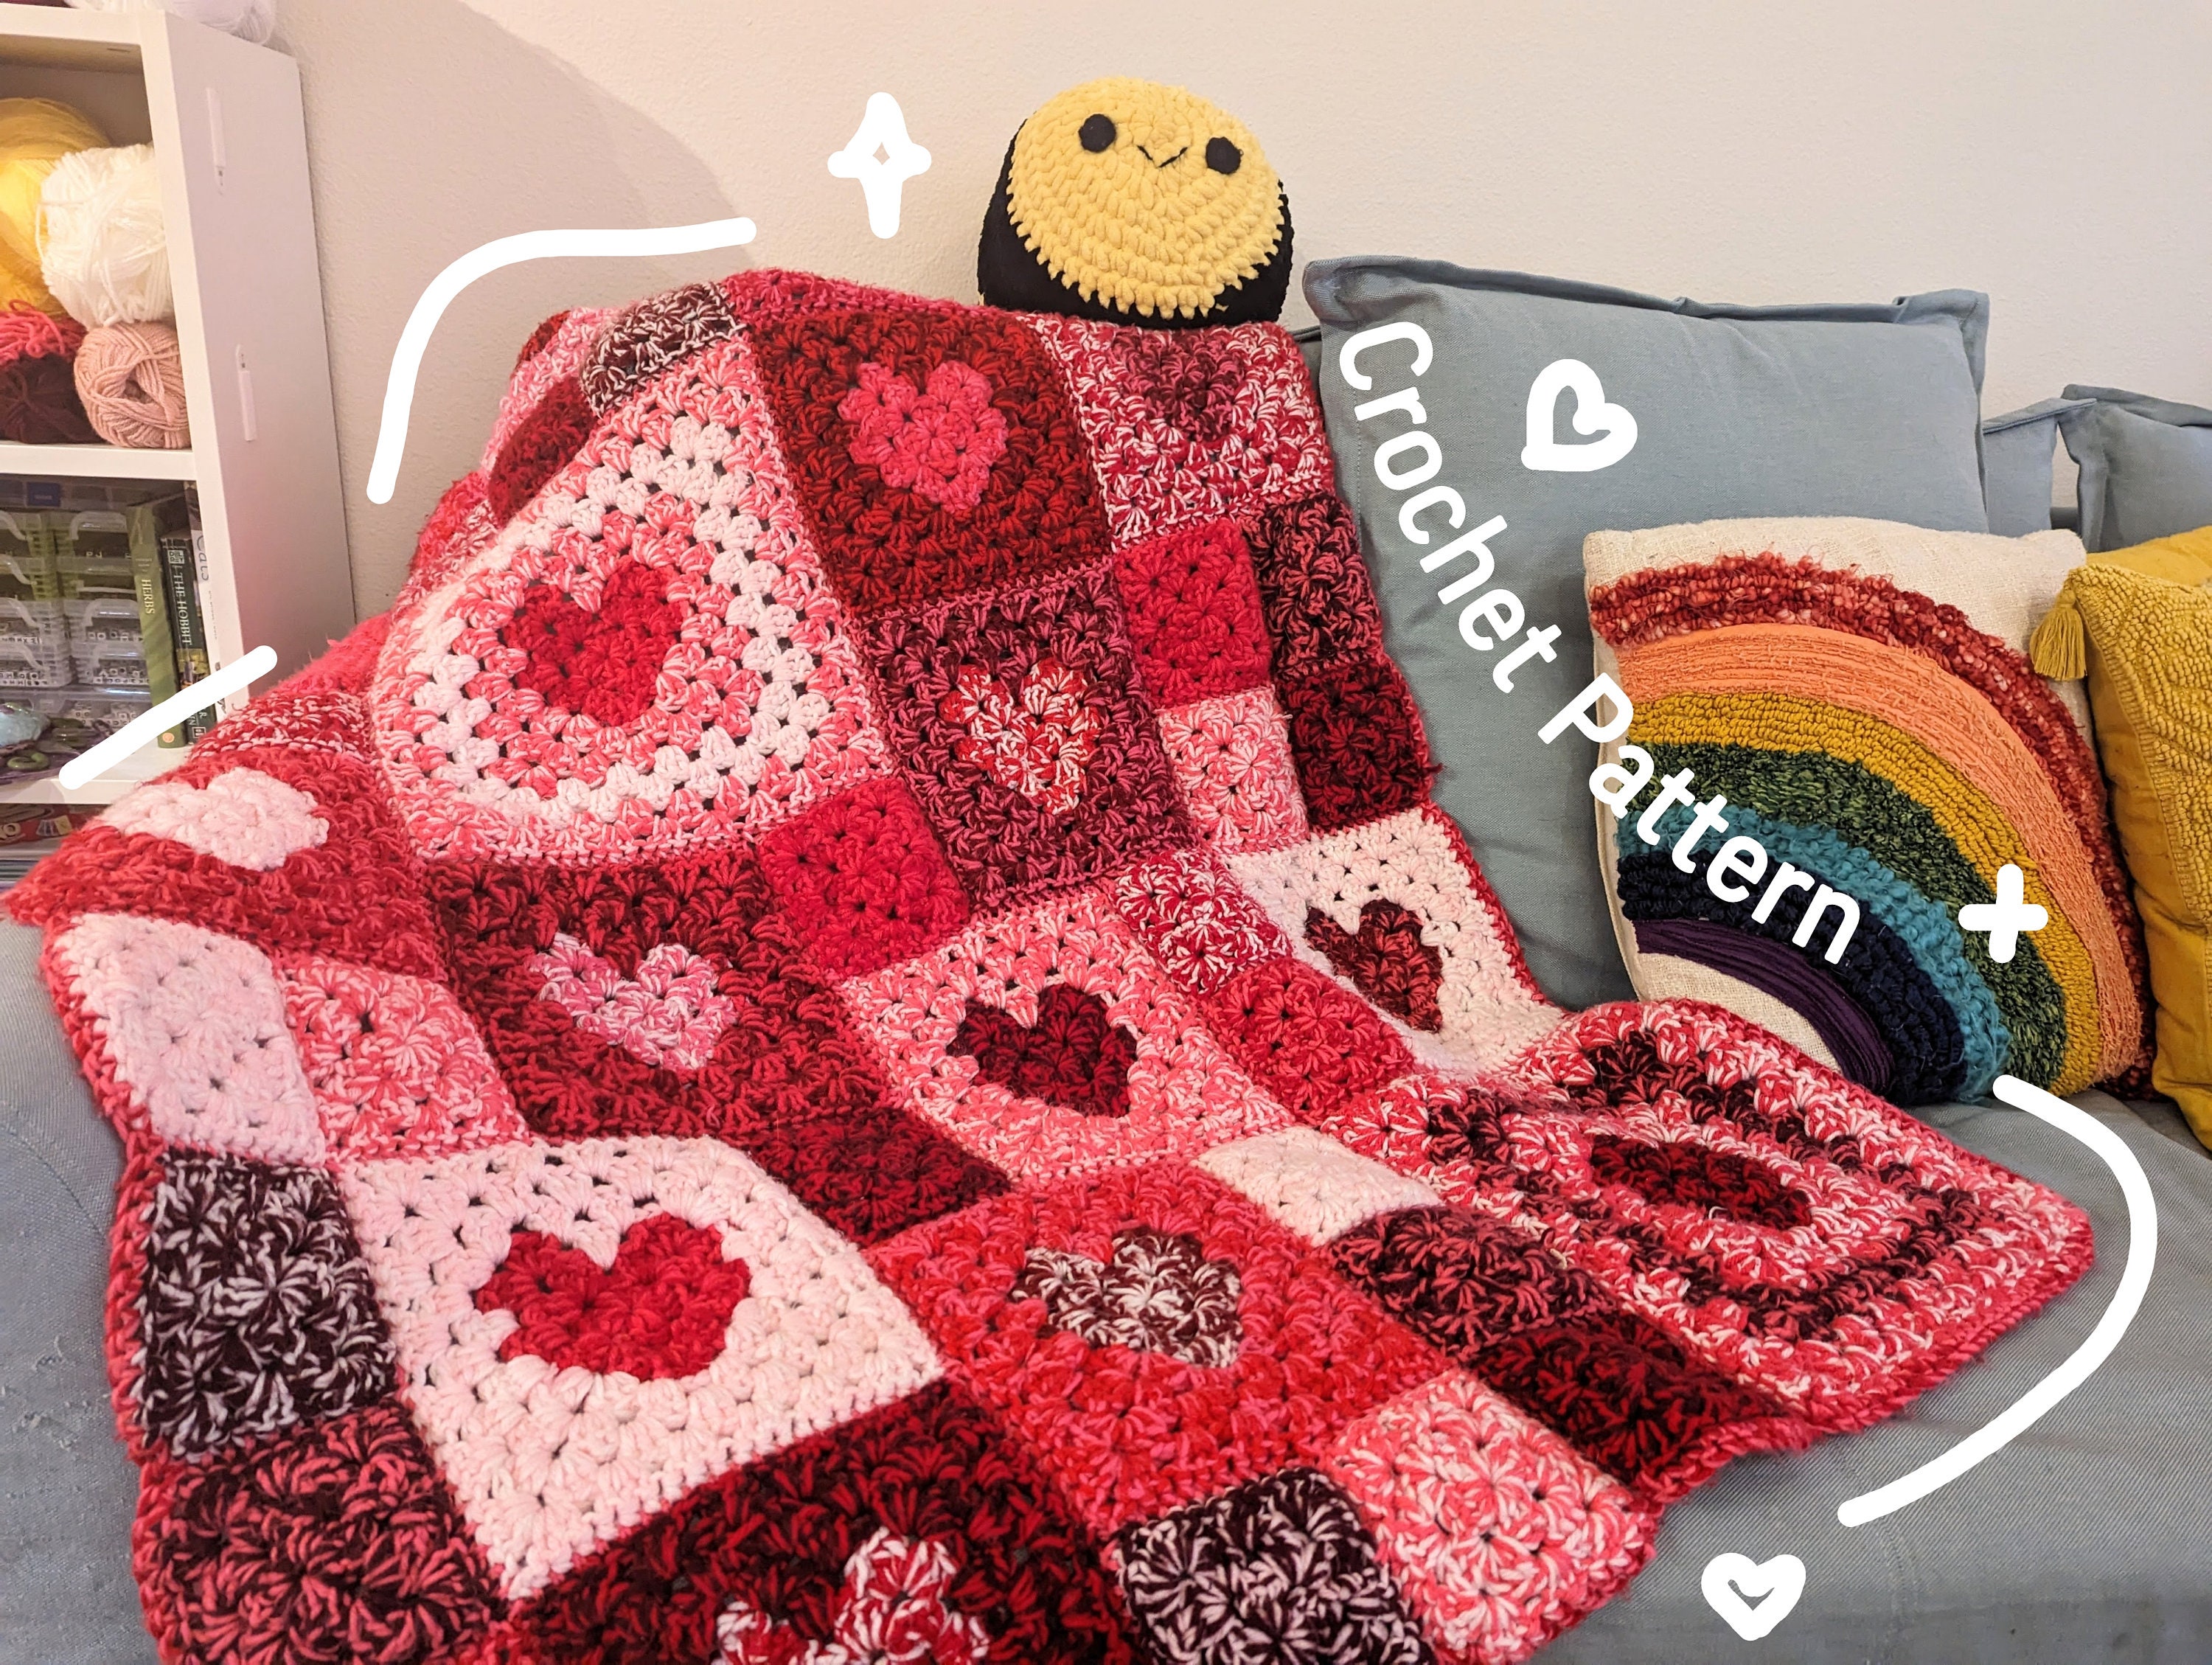 Crochet Blanket Pattern. Heart Baby Blanket Pattern. Easy Valentines Gift  Crochet Afghan. Modern Unique Love Heart Throw Handmade Blanket 